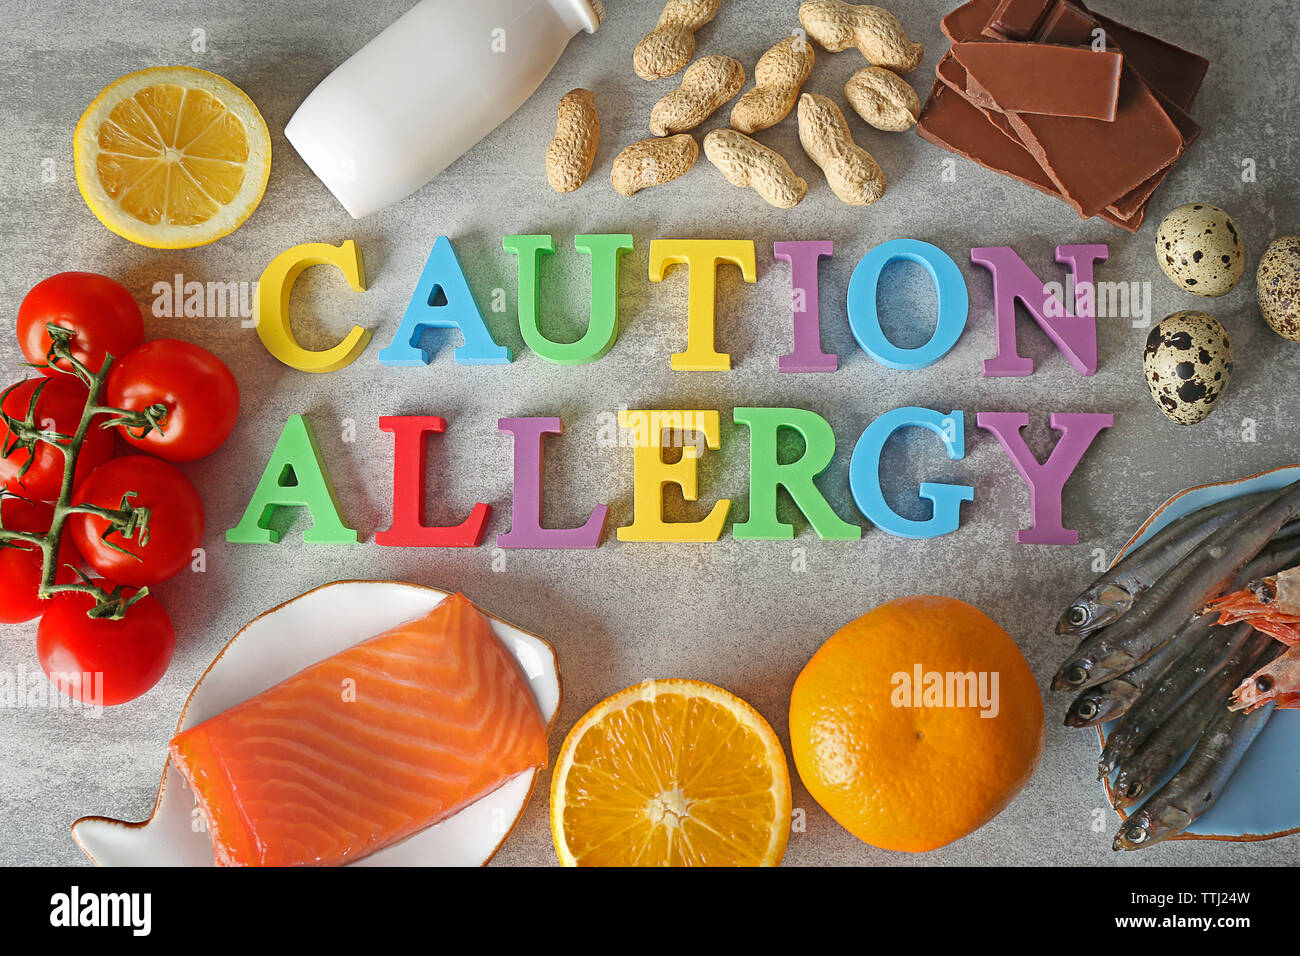 Satz von allergische Lebensmittel auf Grau strukturierten Hintergrund Stockfoto